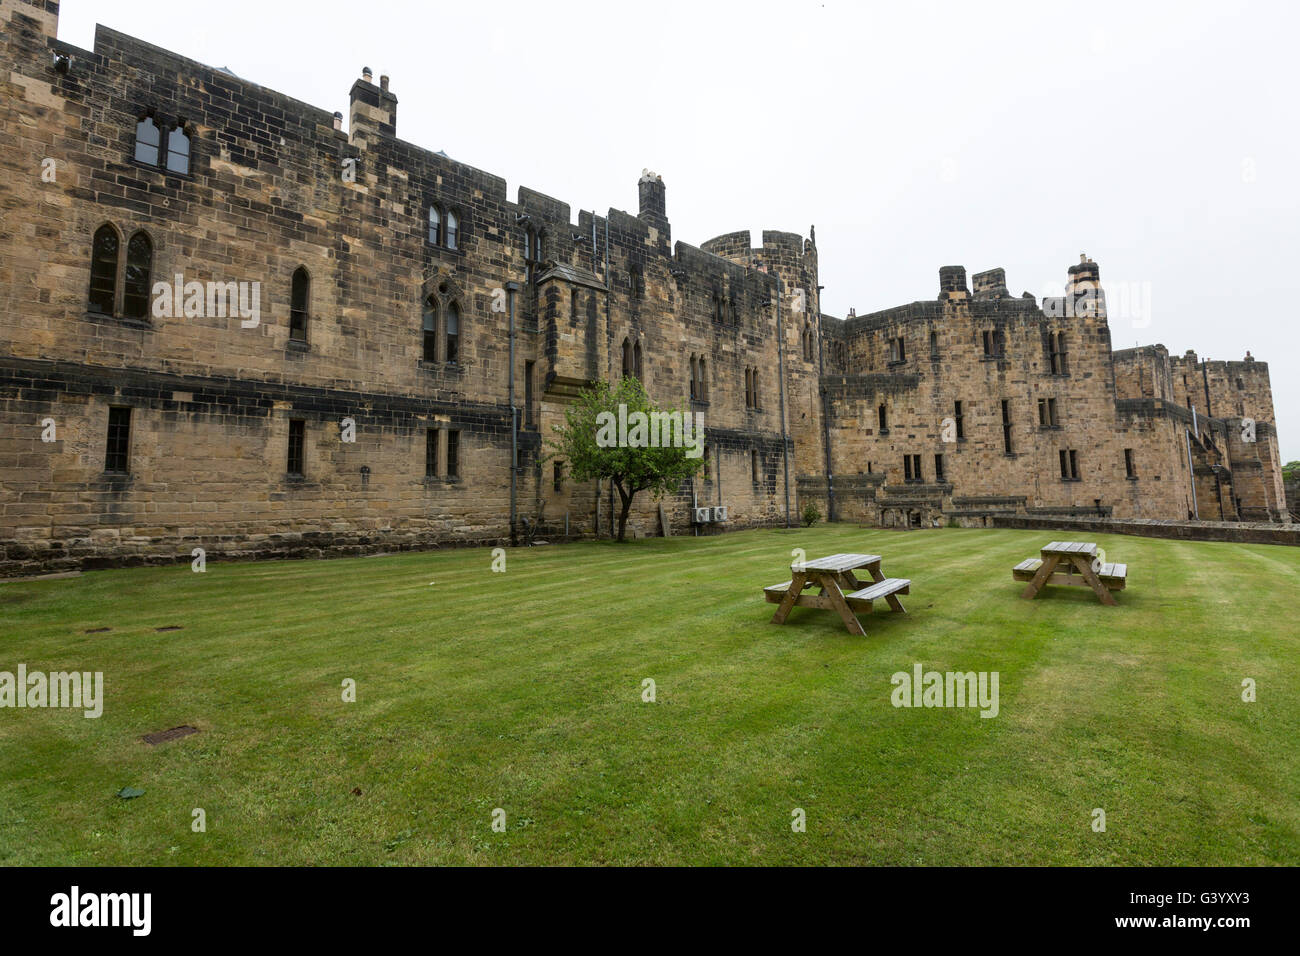 Alnwick Castle courtyard, Alnwick, Northumberland, England, UK Stock Photo